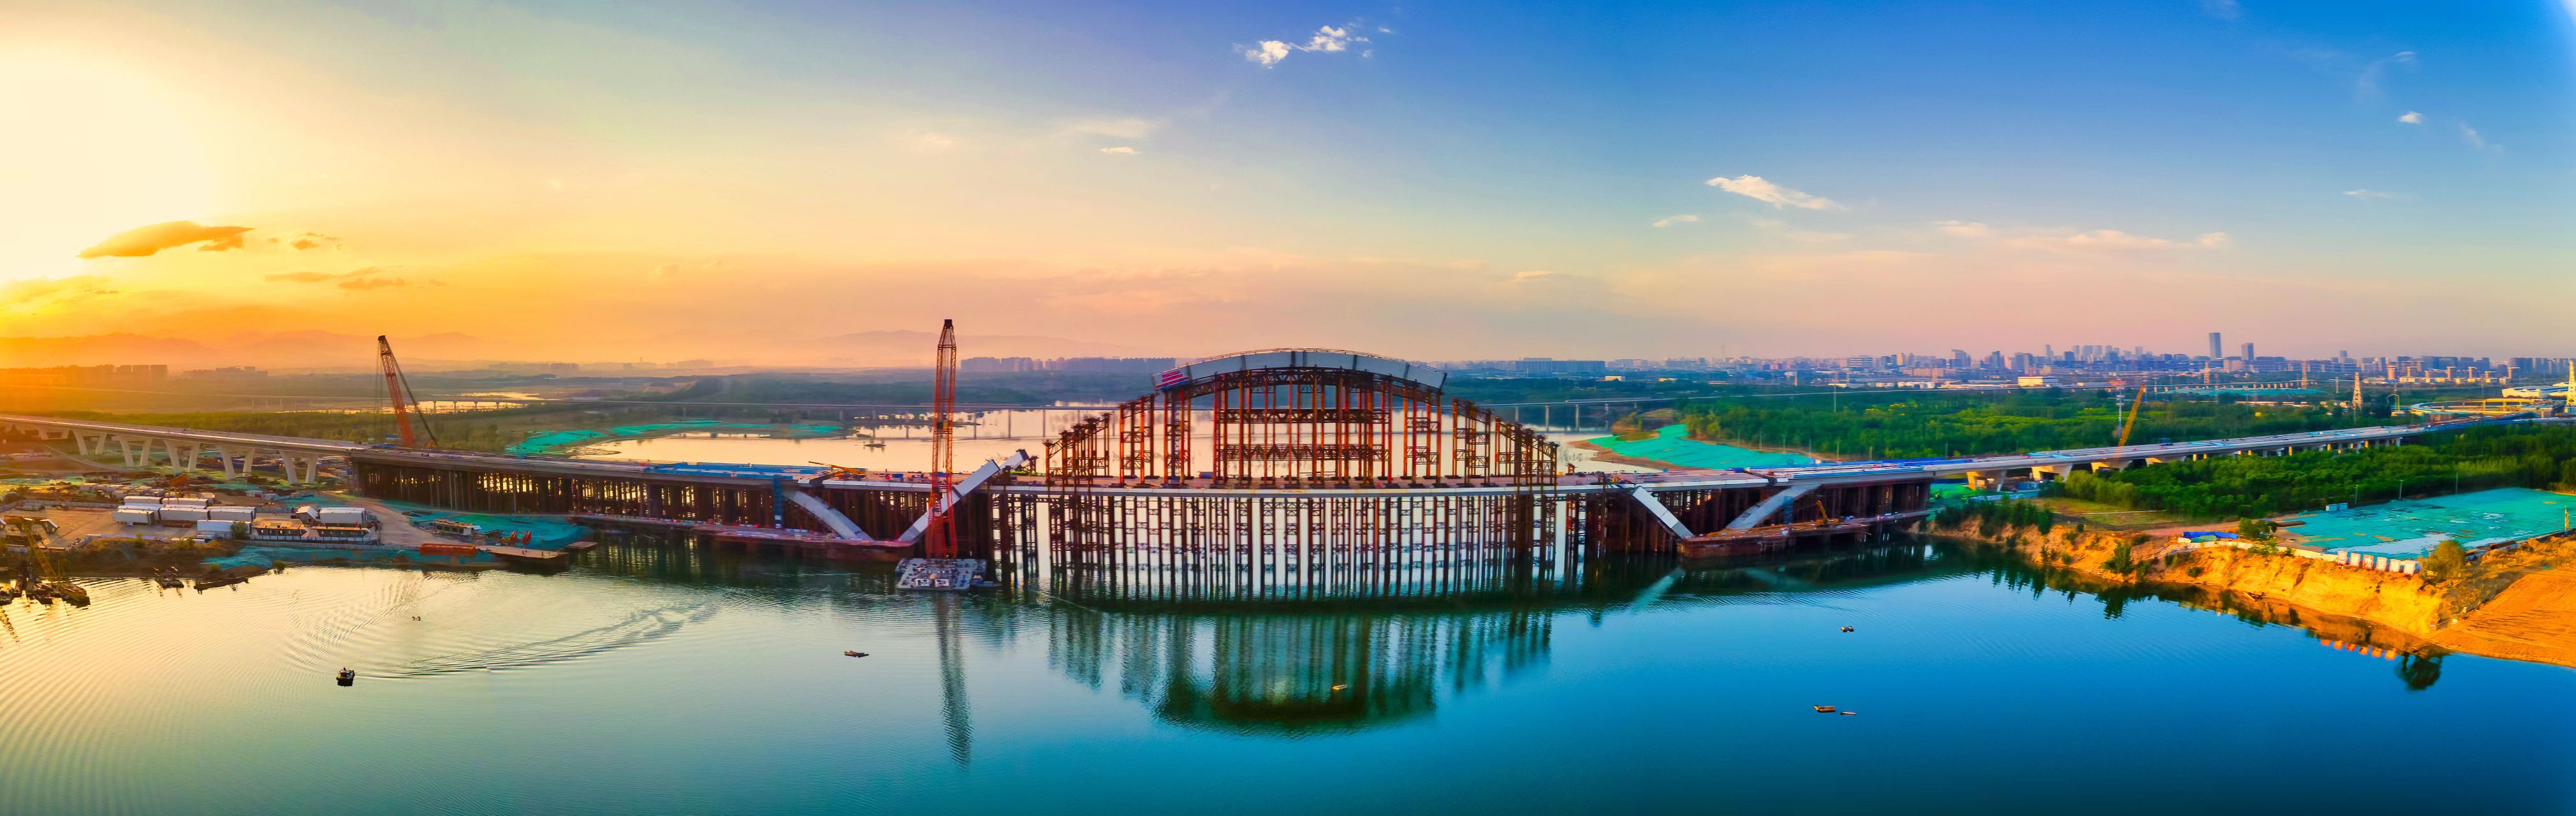 北京永定河畔京雄大桥实现合龙 京雄高速年内将全线通车